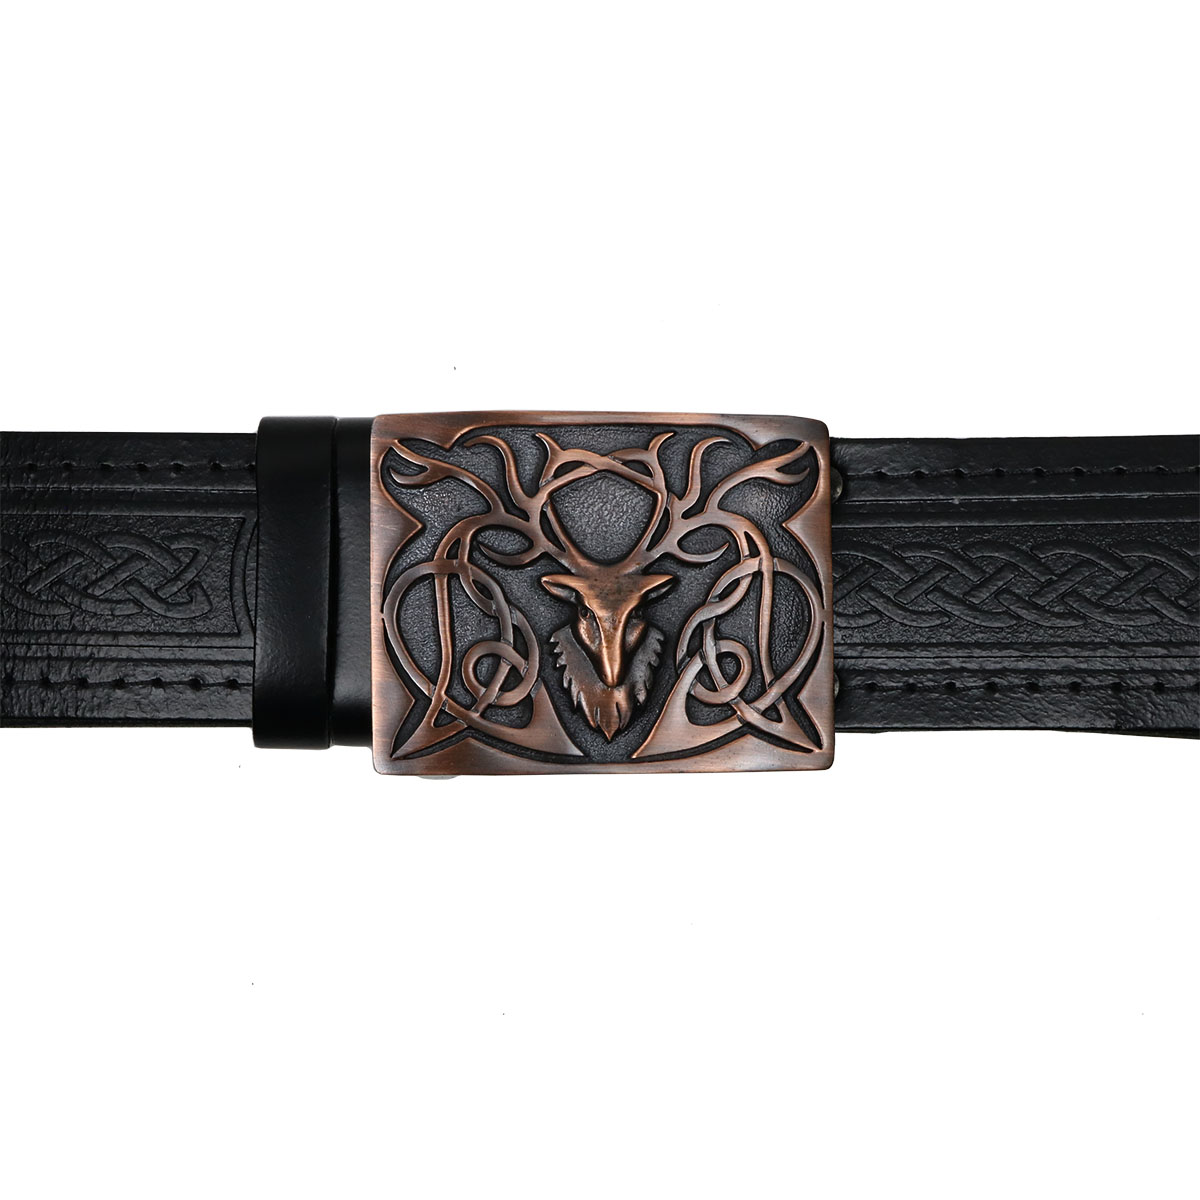 Real Genuine Leather Scottish Kilt Belt Stag Buckle Highland 2 piece set 